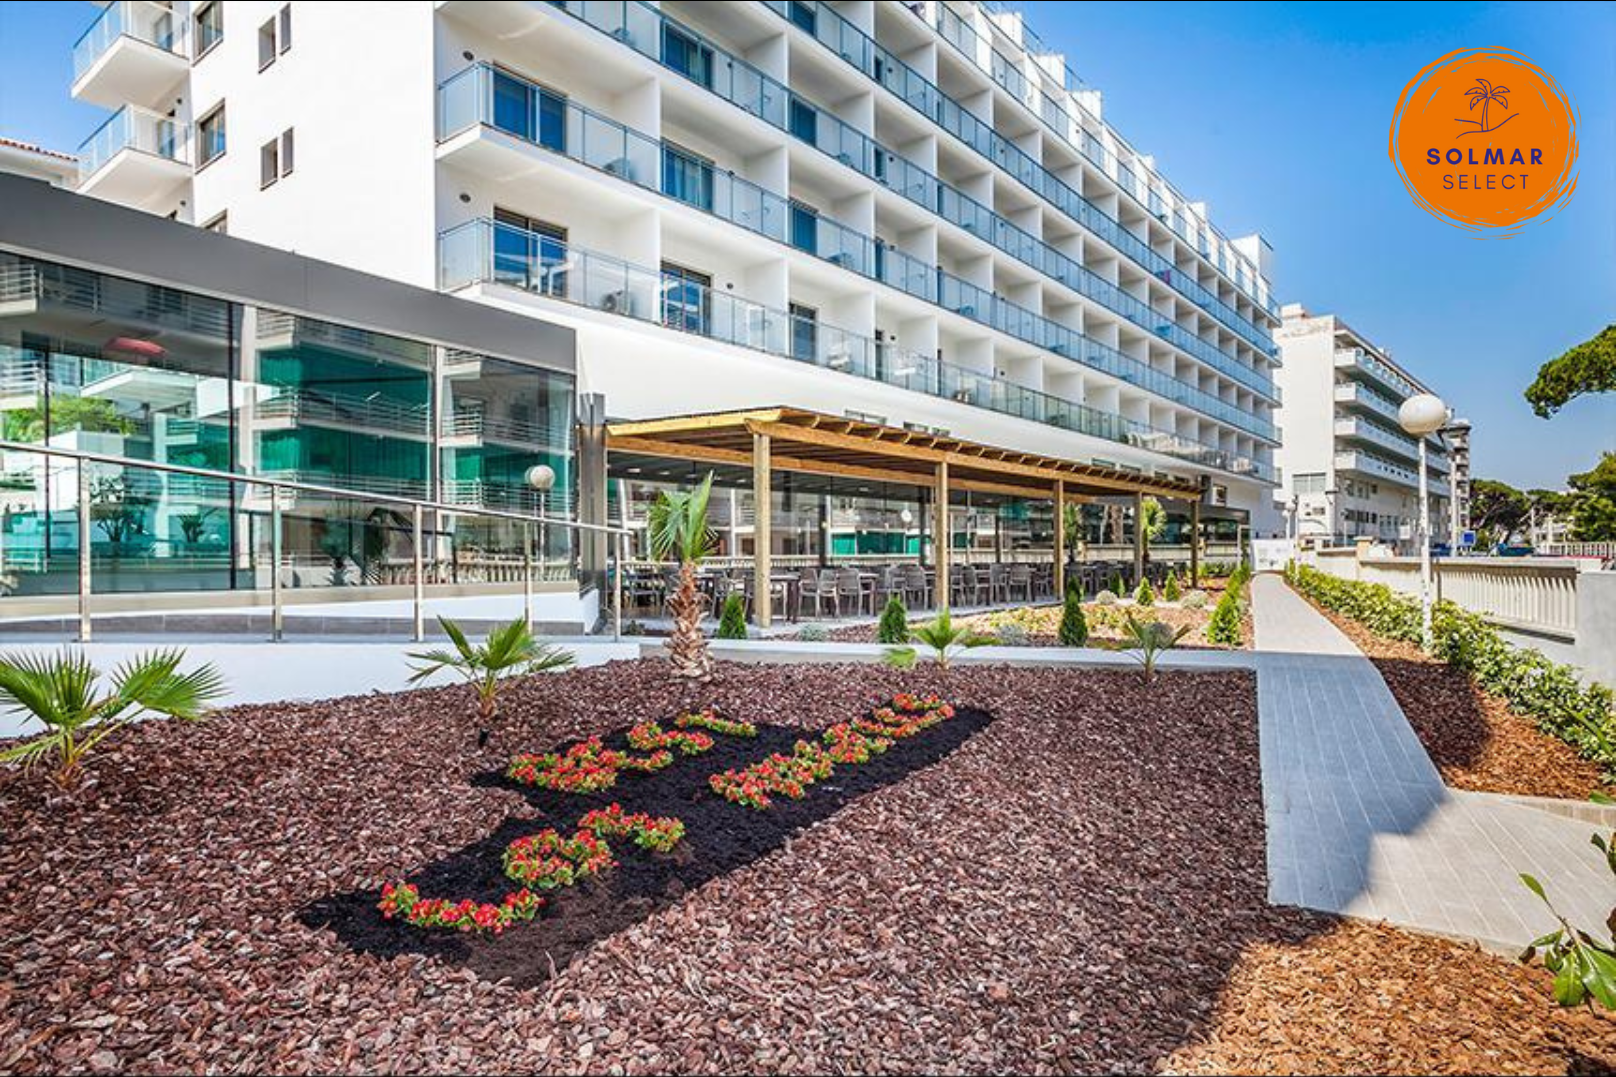 Ontdek luxe en comfort in het recent gerenoveerde 4-sterren familiehotel, Hotel Best Los Angeles, gelegen in het bruisende nieuwe centrum van Salou. Boek nu en beleef een onvergetelijke vakantie op slechts 150 meter van het strand! ????